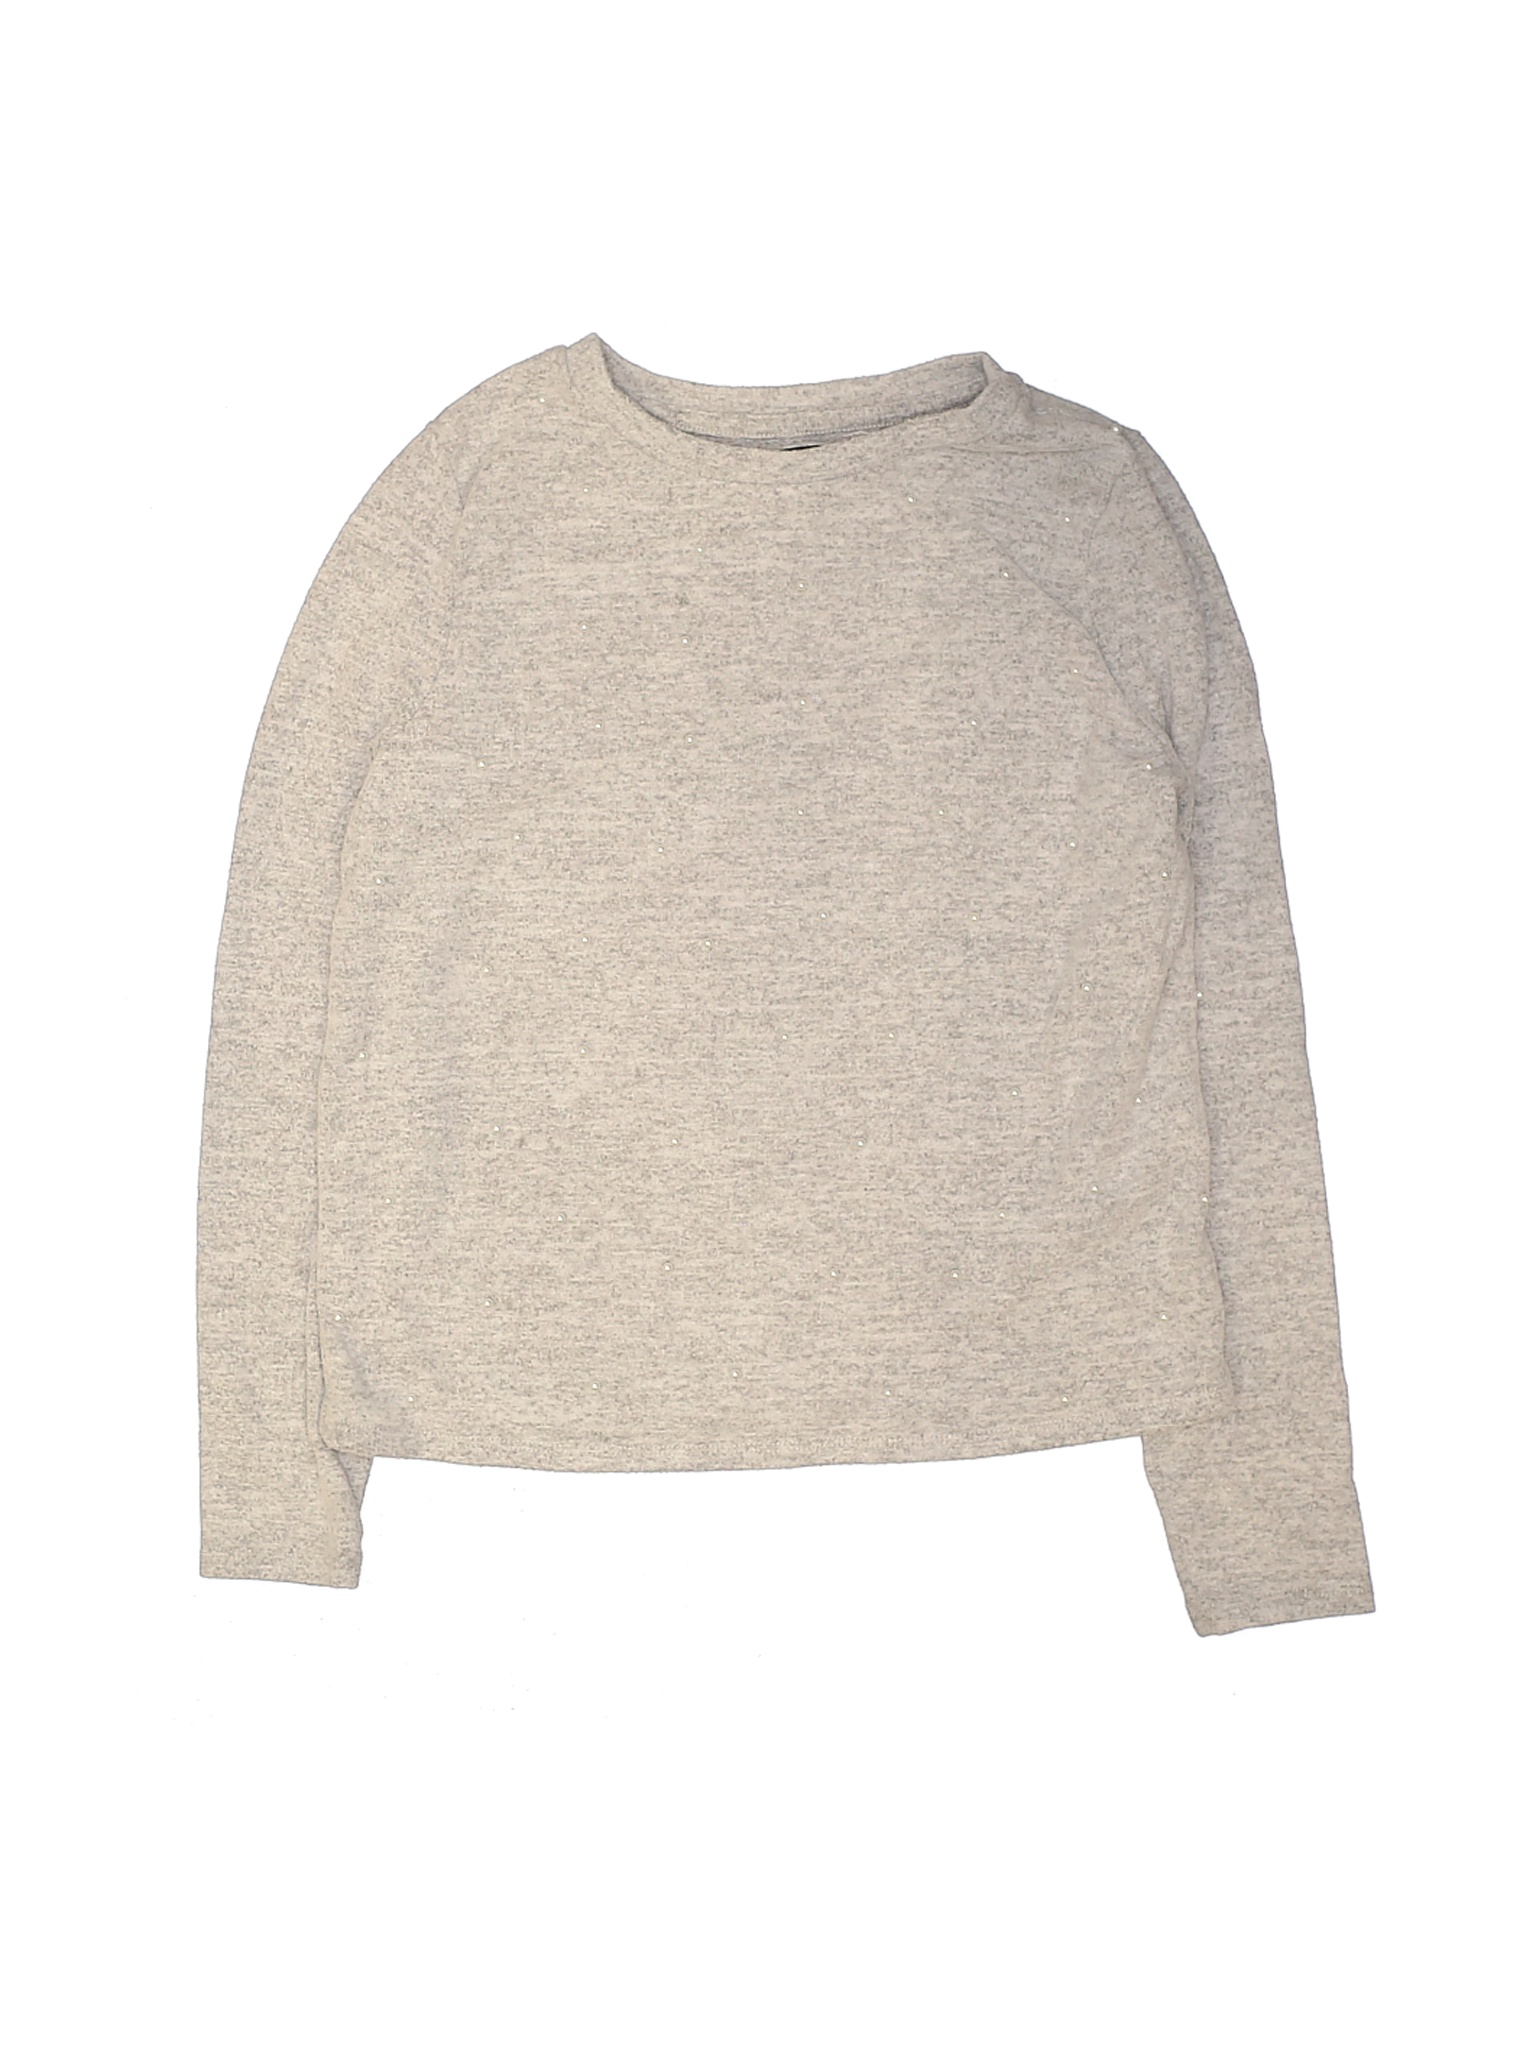 Art Class Girls Brown Pullover Sweater 14 | eBay